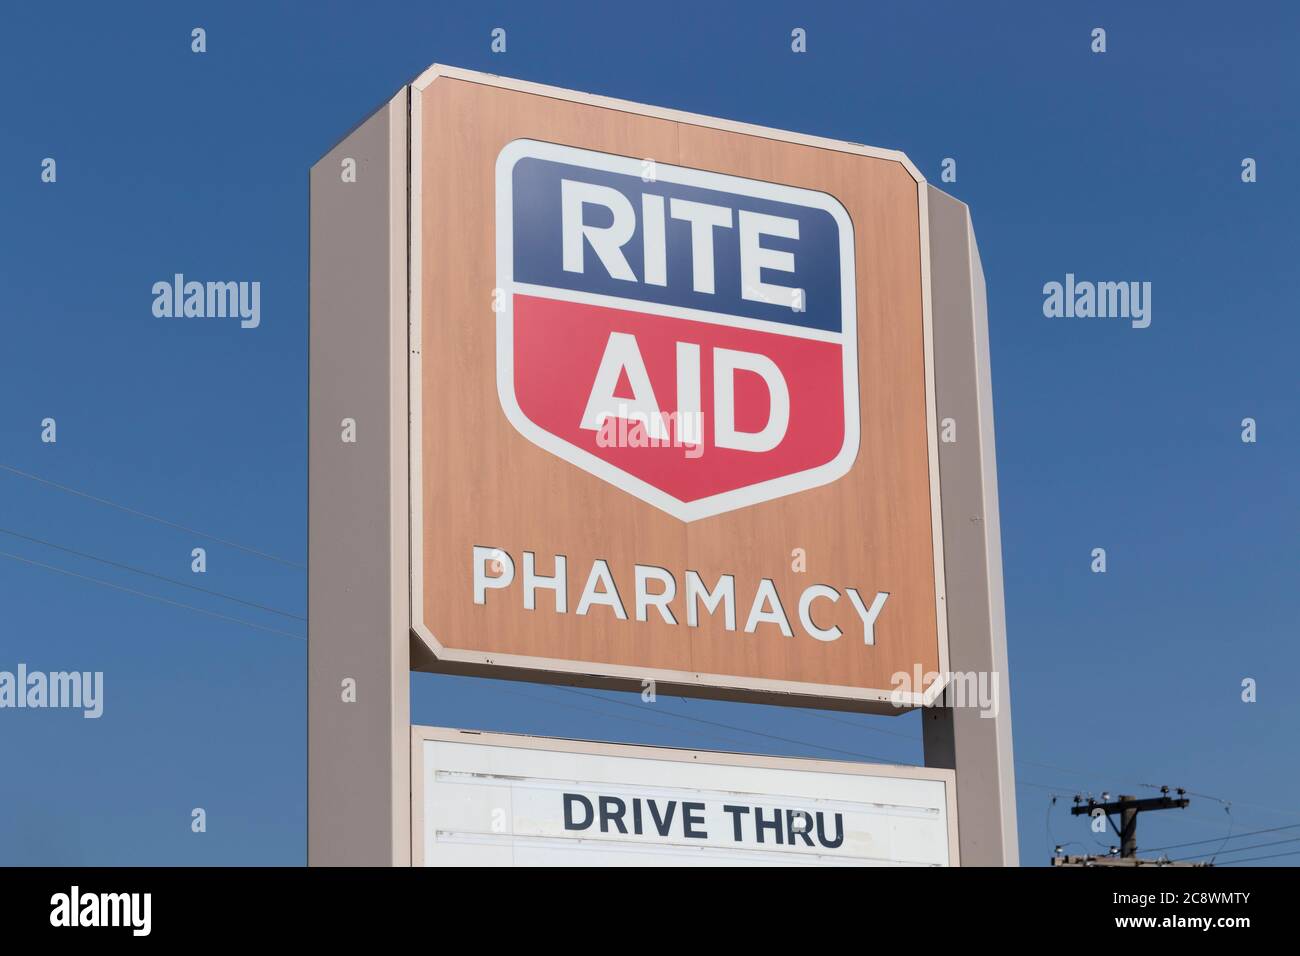 Delphos - Circa juillet 2020: Rite Aid Drug Store et pharmacie. Rite Aid est une chaîne de pharmacies vendant des biens de consommation, des médicaments en vente libre et des médicaments prescripteurs Banque D'Images